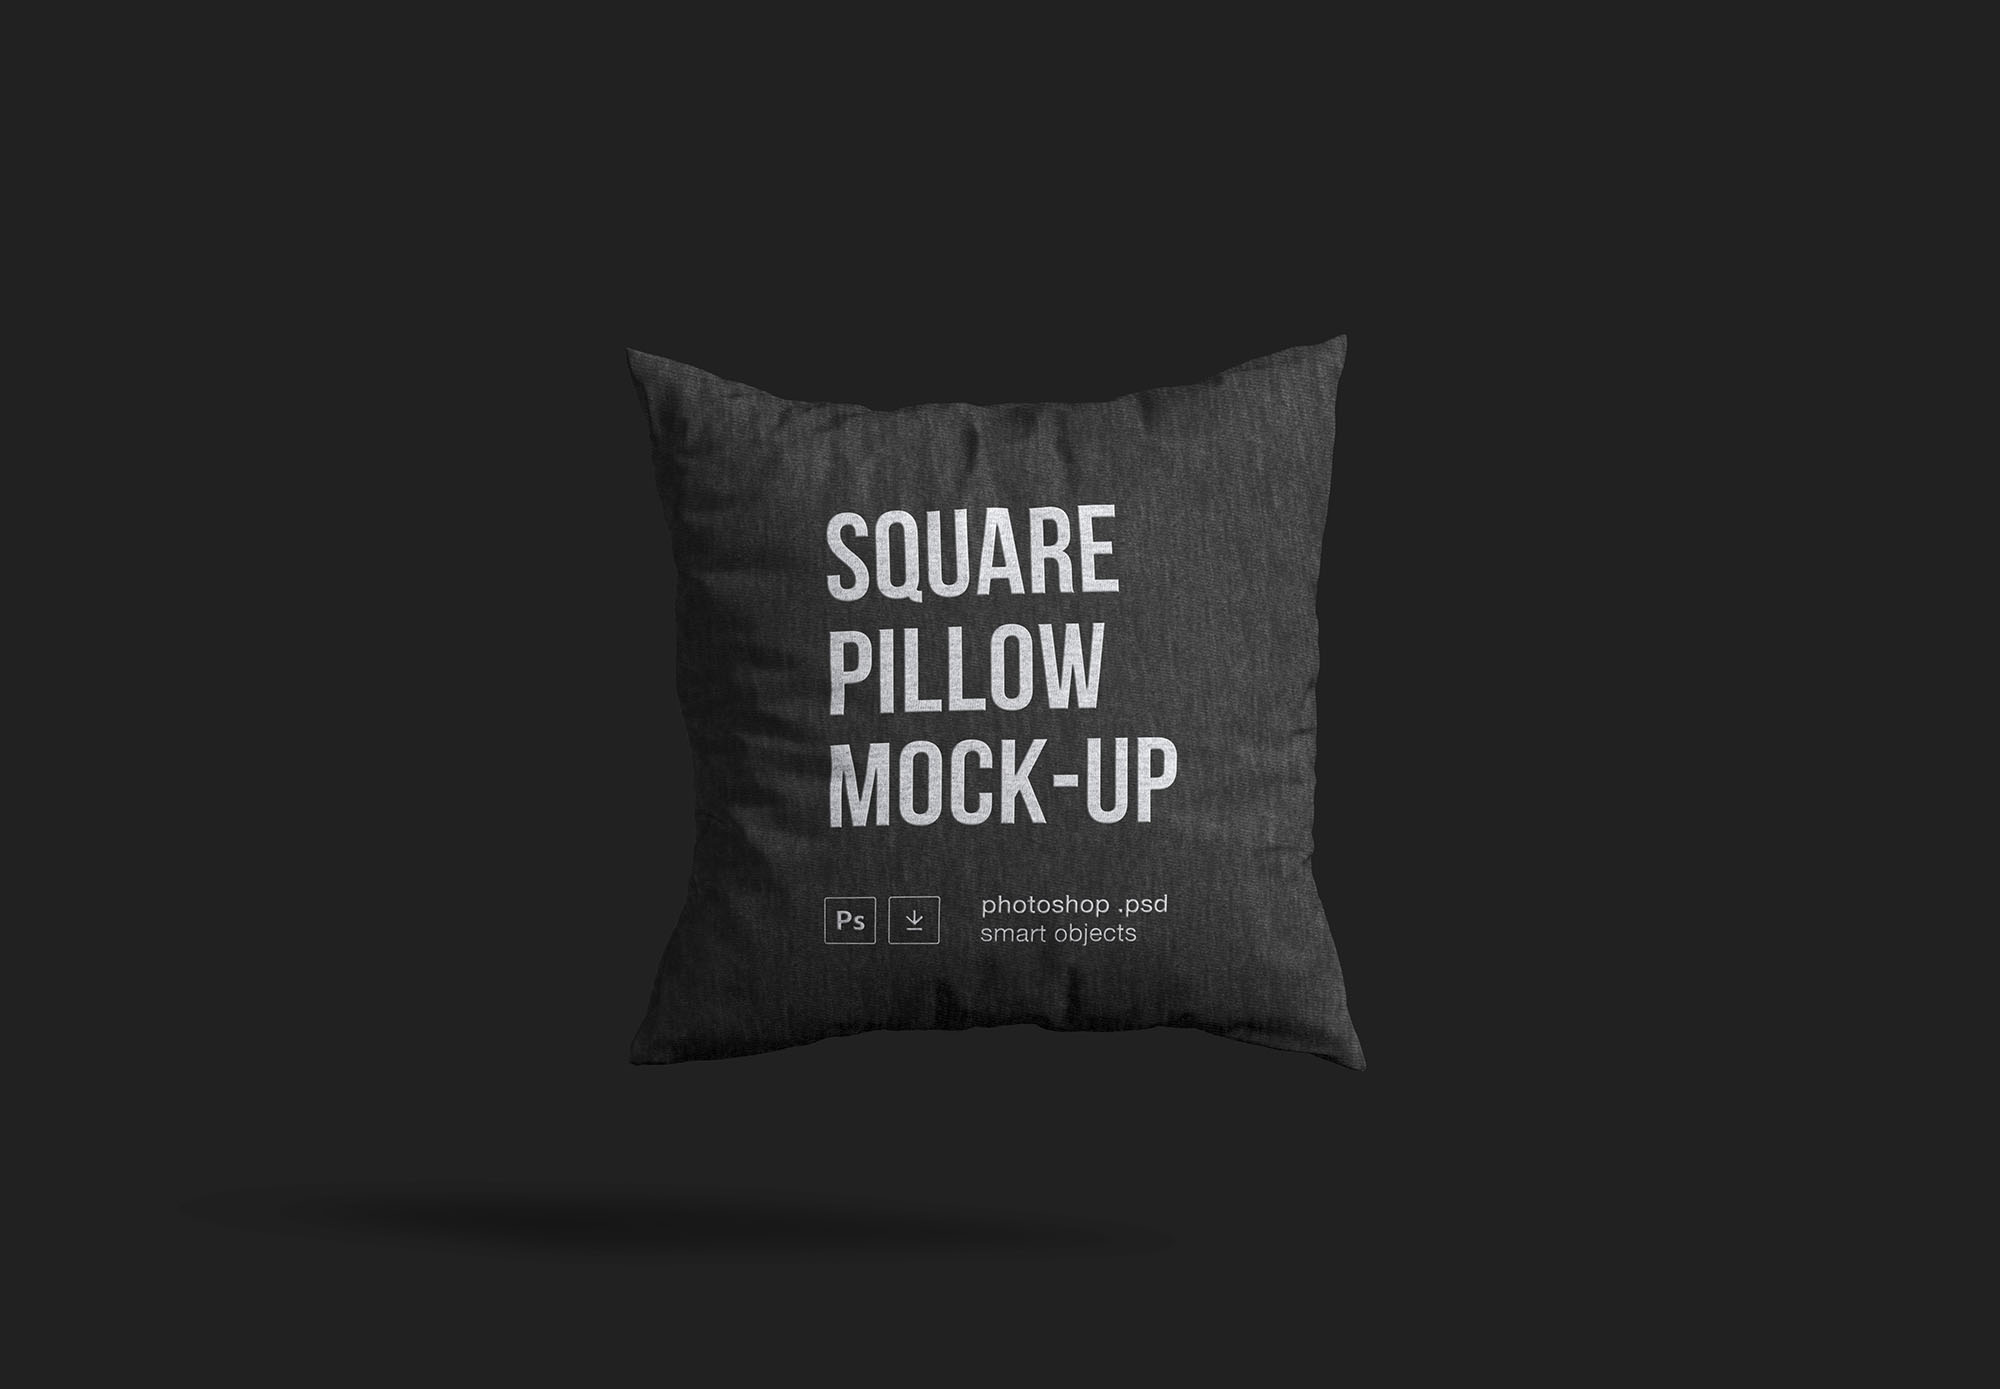 方形枕头抱枕外观设计样机模板 Square Pillow Mockup插图(1)